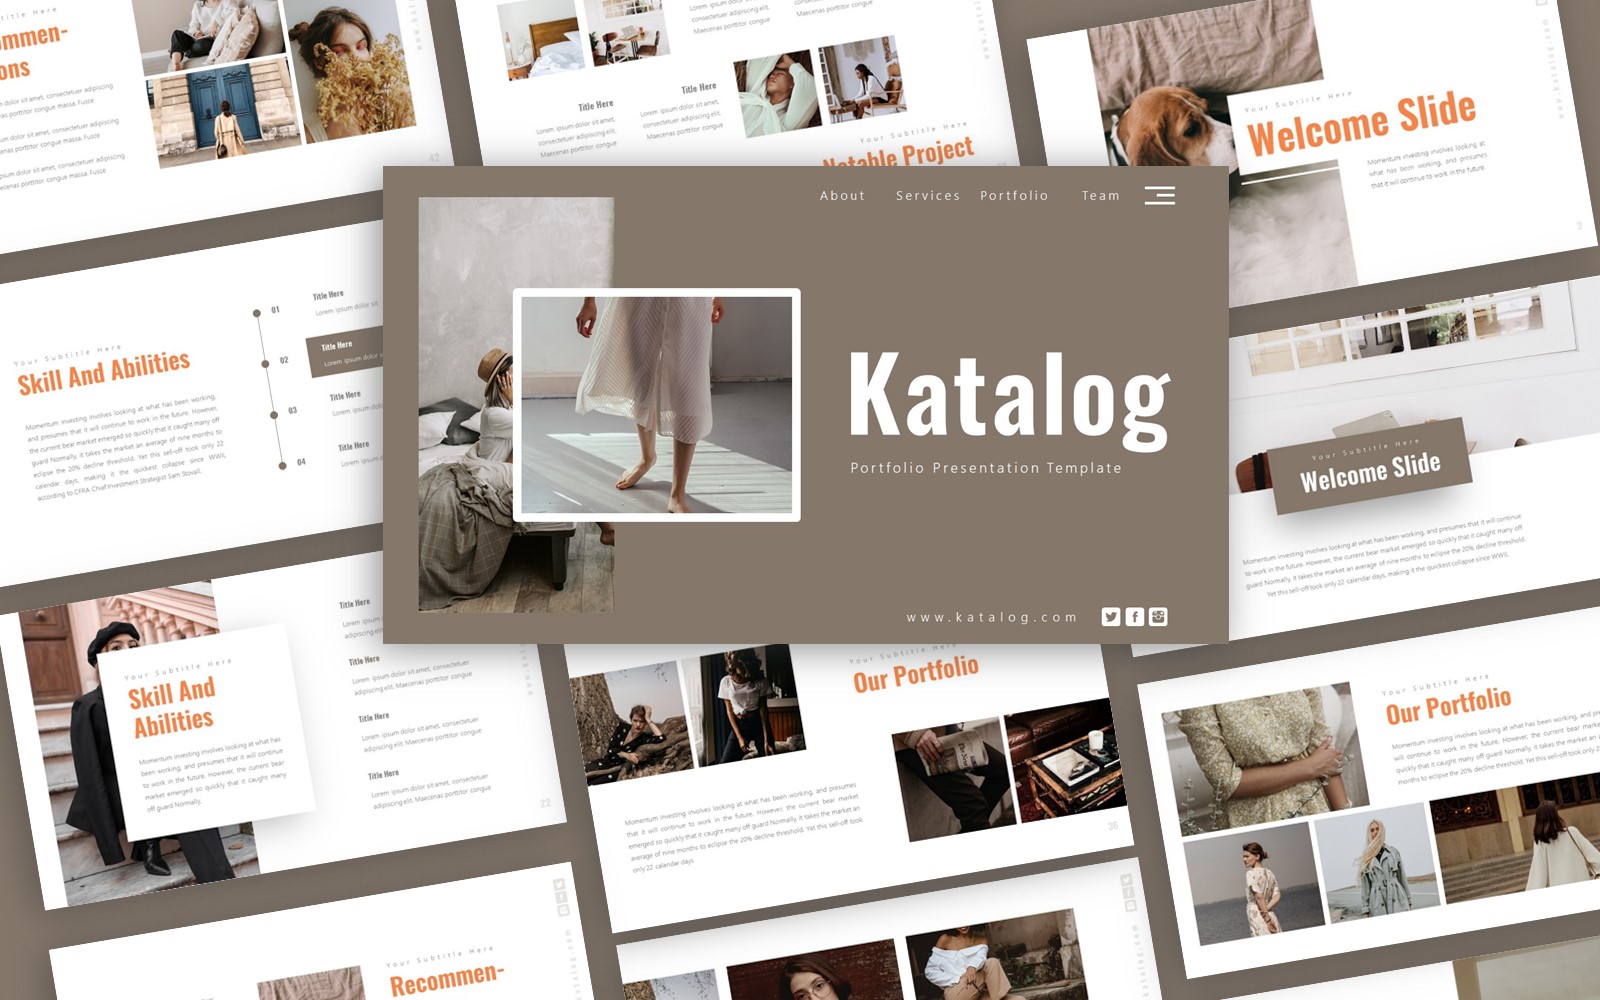 Katalog Portfolio Presentation PowerPoint template